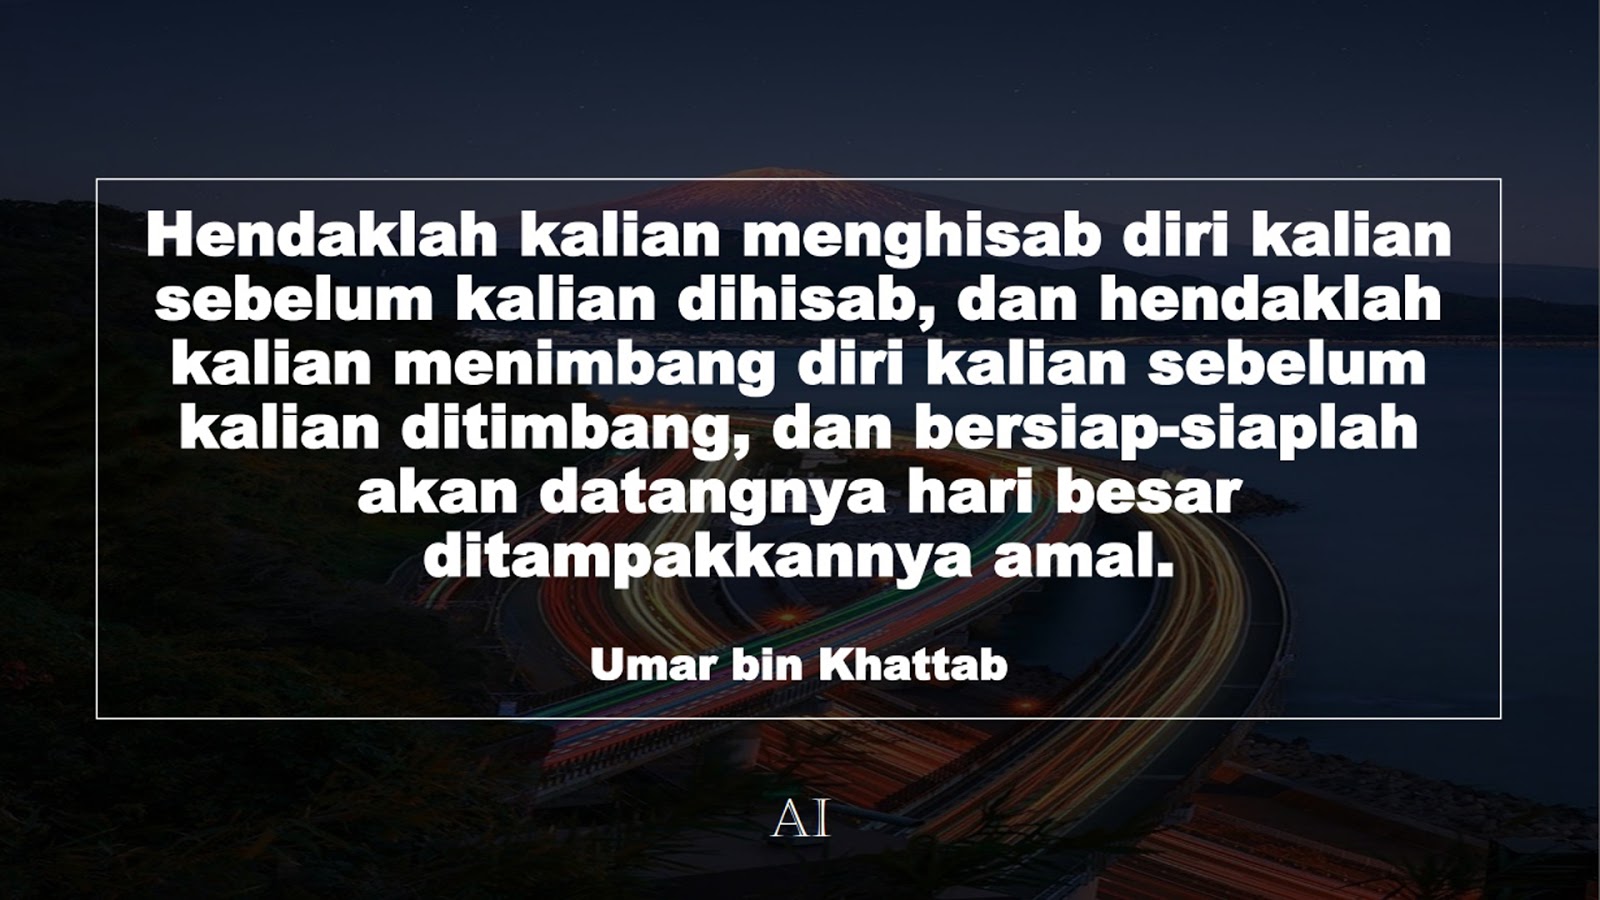 Wallpaper Kata Bijak Umar bin Khattab  (Hendaklah kalian menghisab diri kalian sebelum kalian dihisab, dan hendaklah kalian menimbang diri kalian sebelum kalian ditimbang, dan bersiap-siaplah akan datangnya hari besar ditampakkannya amal.)